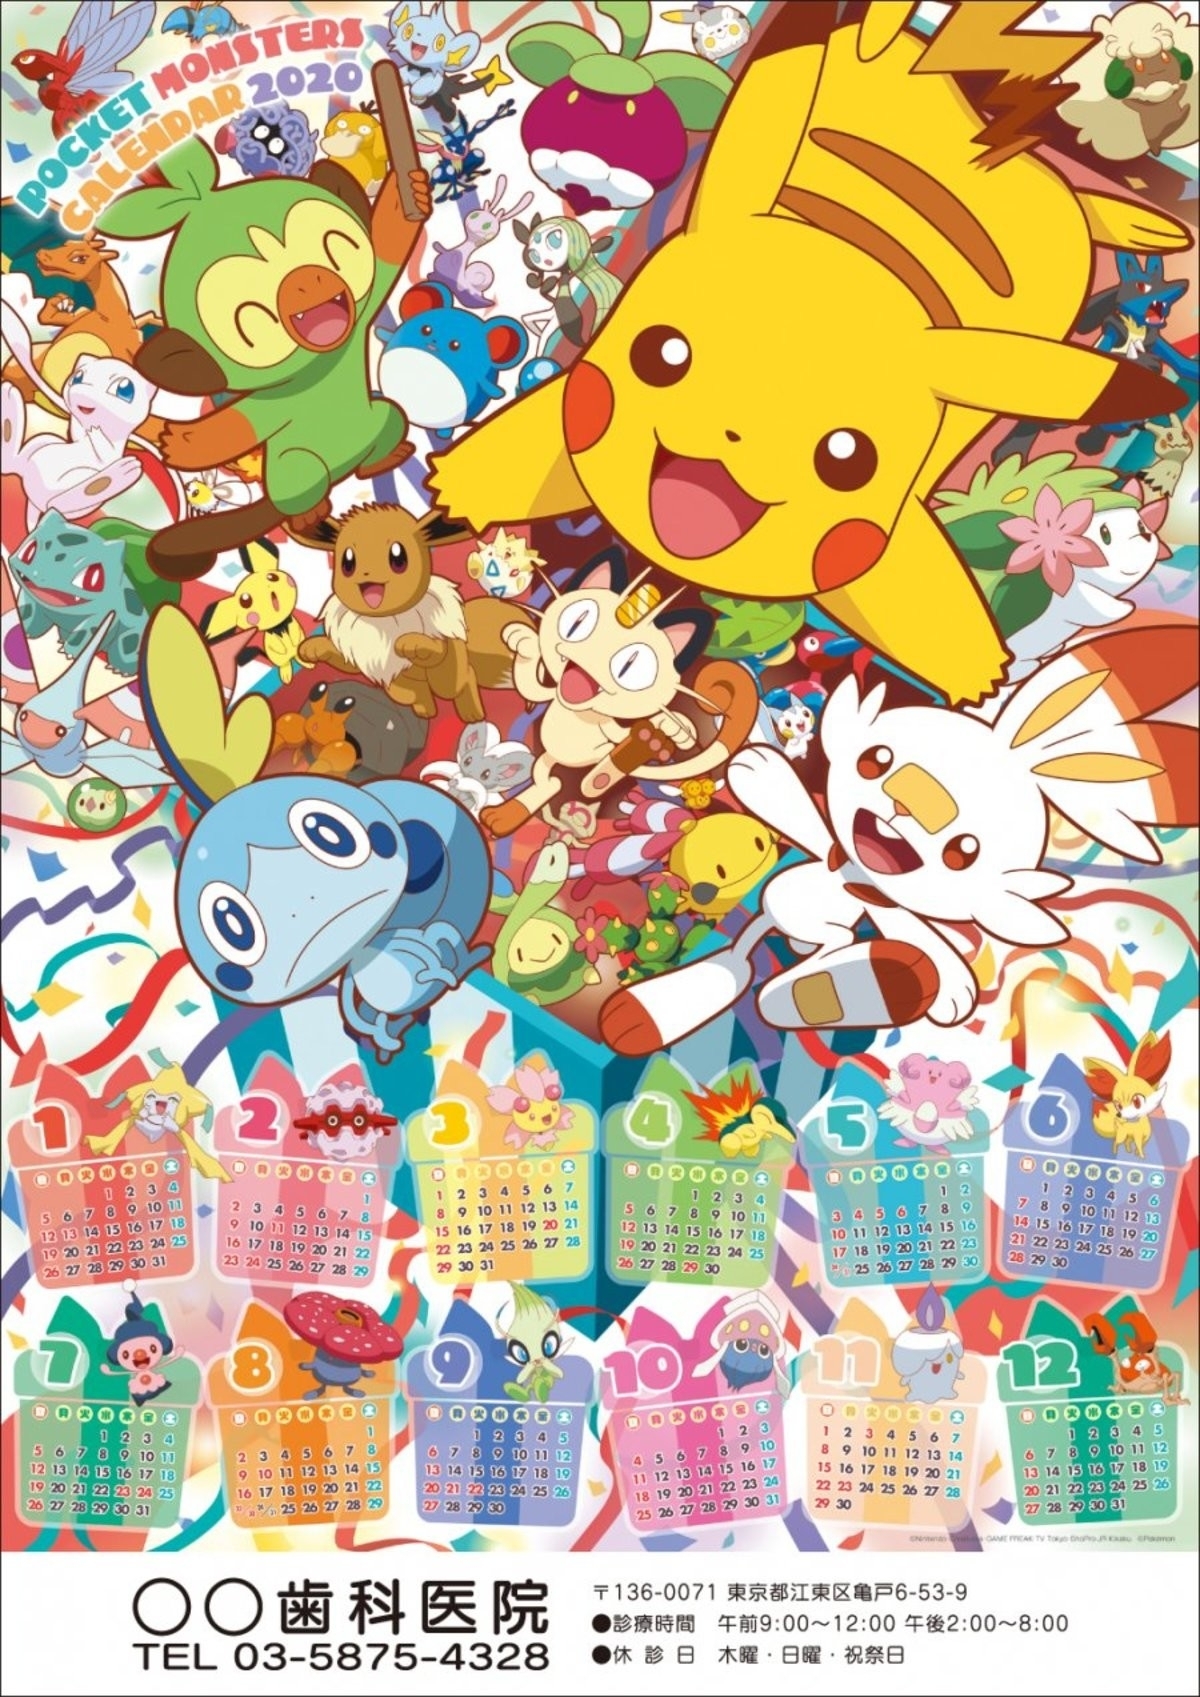 Official 2020 Pokemon Calendar